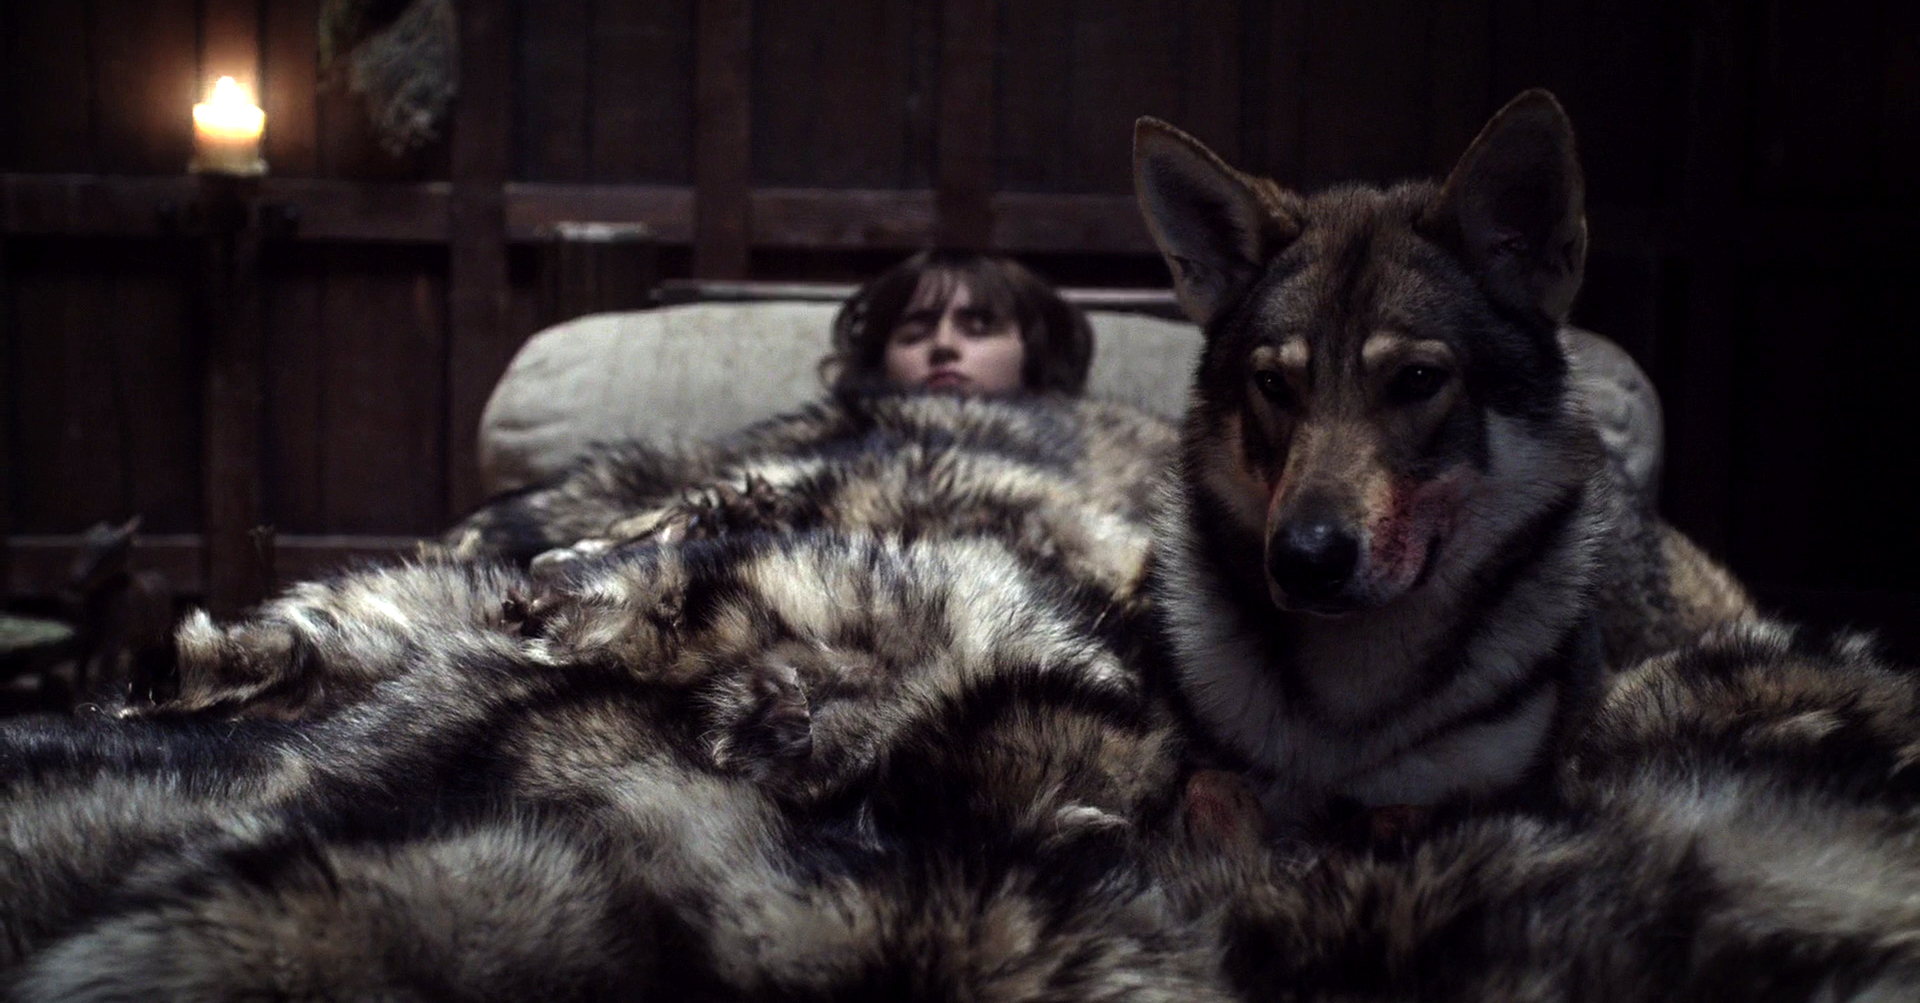 Summert az Odin névre hallgató északi inuit kutya alakította a Trónok harcában